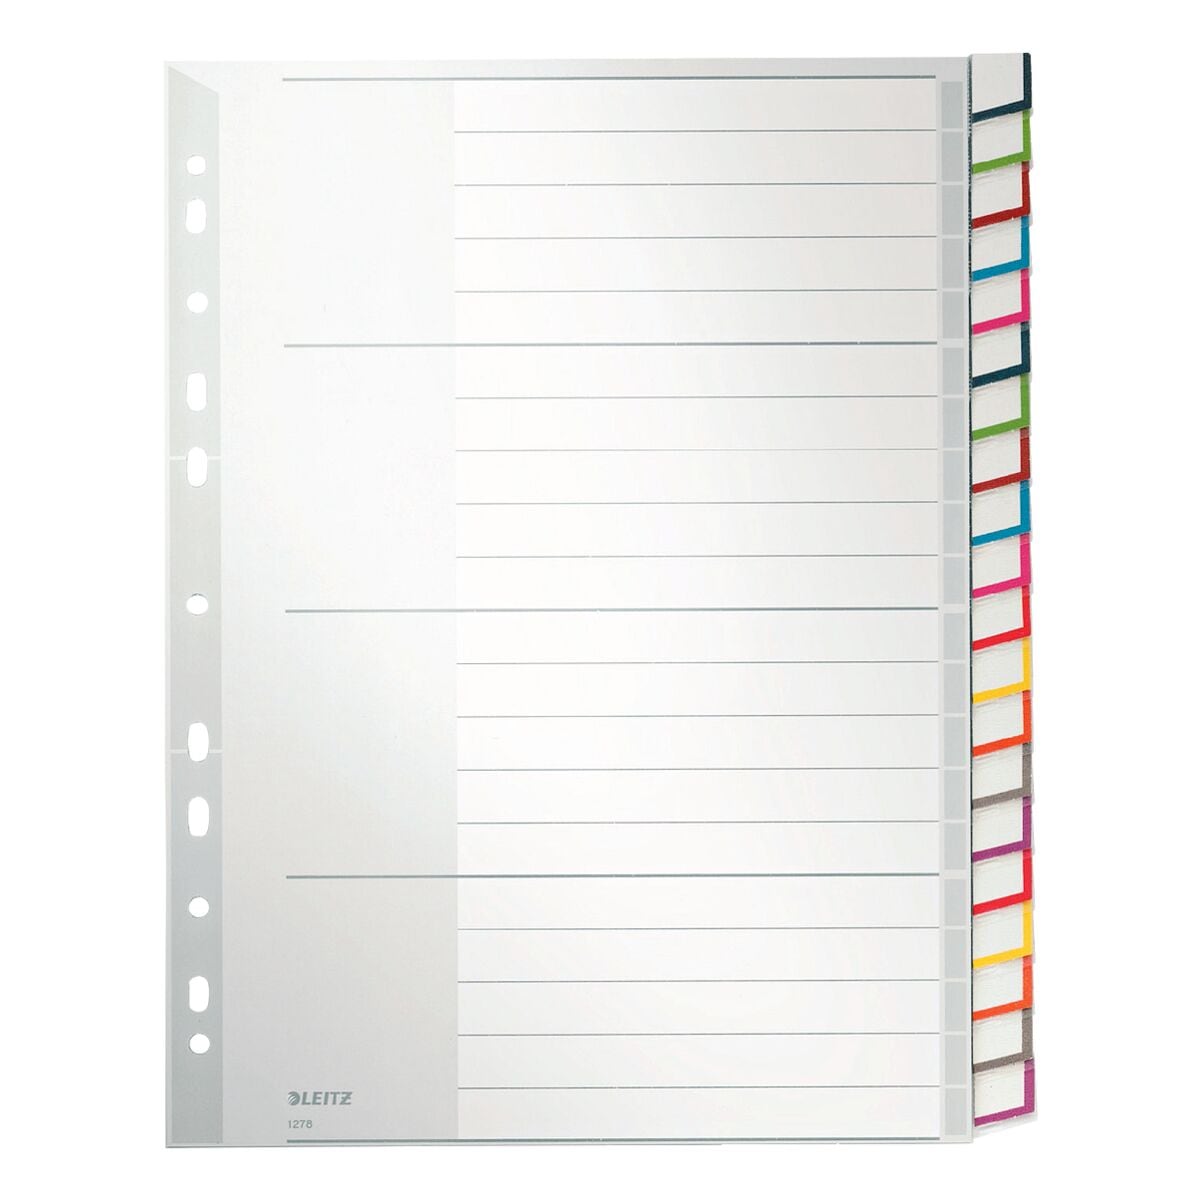 LEITZ Register 1278, A4 berbreit, mit Fenstertaben 20-teilig, grau / mehrfarbige Taben, Kunststoff